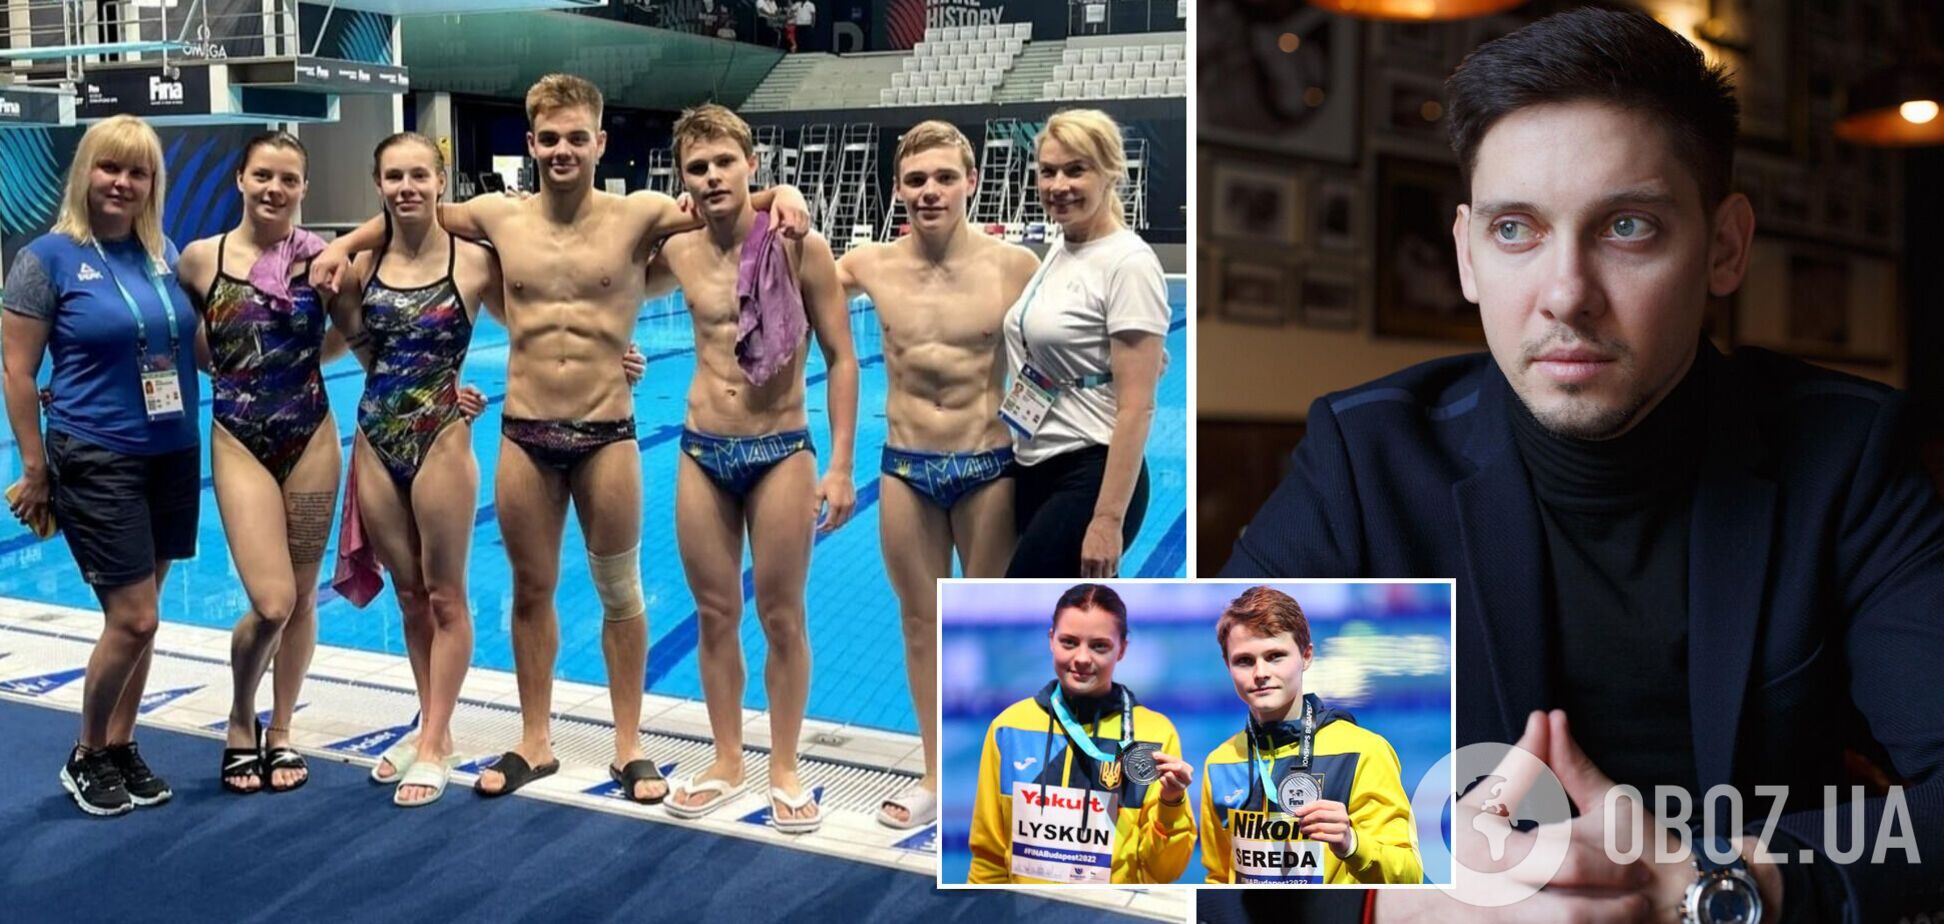 'Шантаж, угрозы и унижение стали нормой': украинские спортсмены подняли бунт против тренера сборной и просят помощи министра